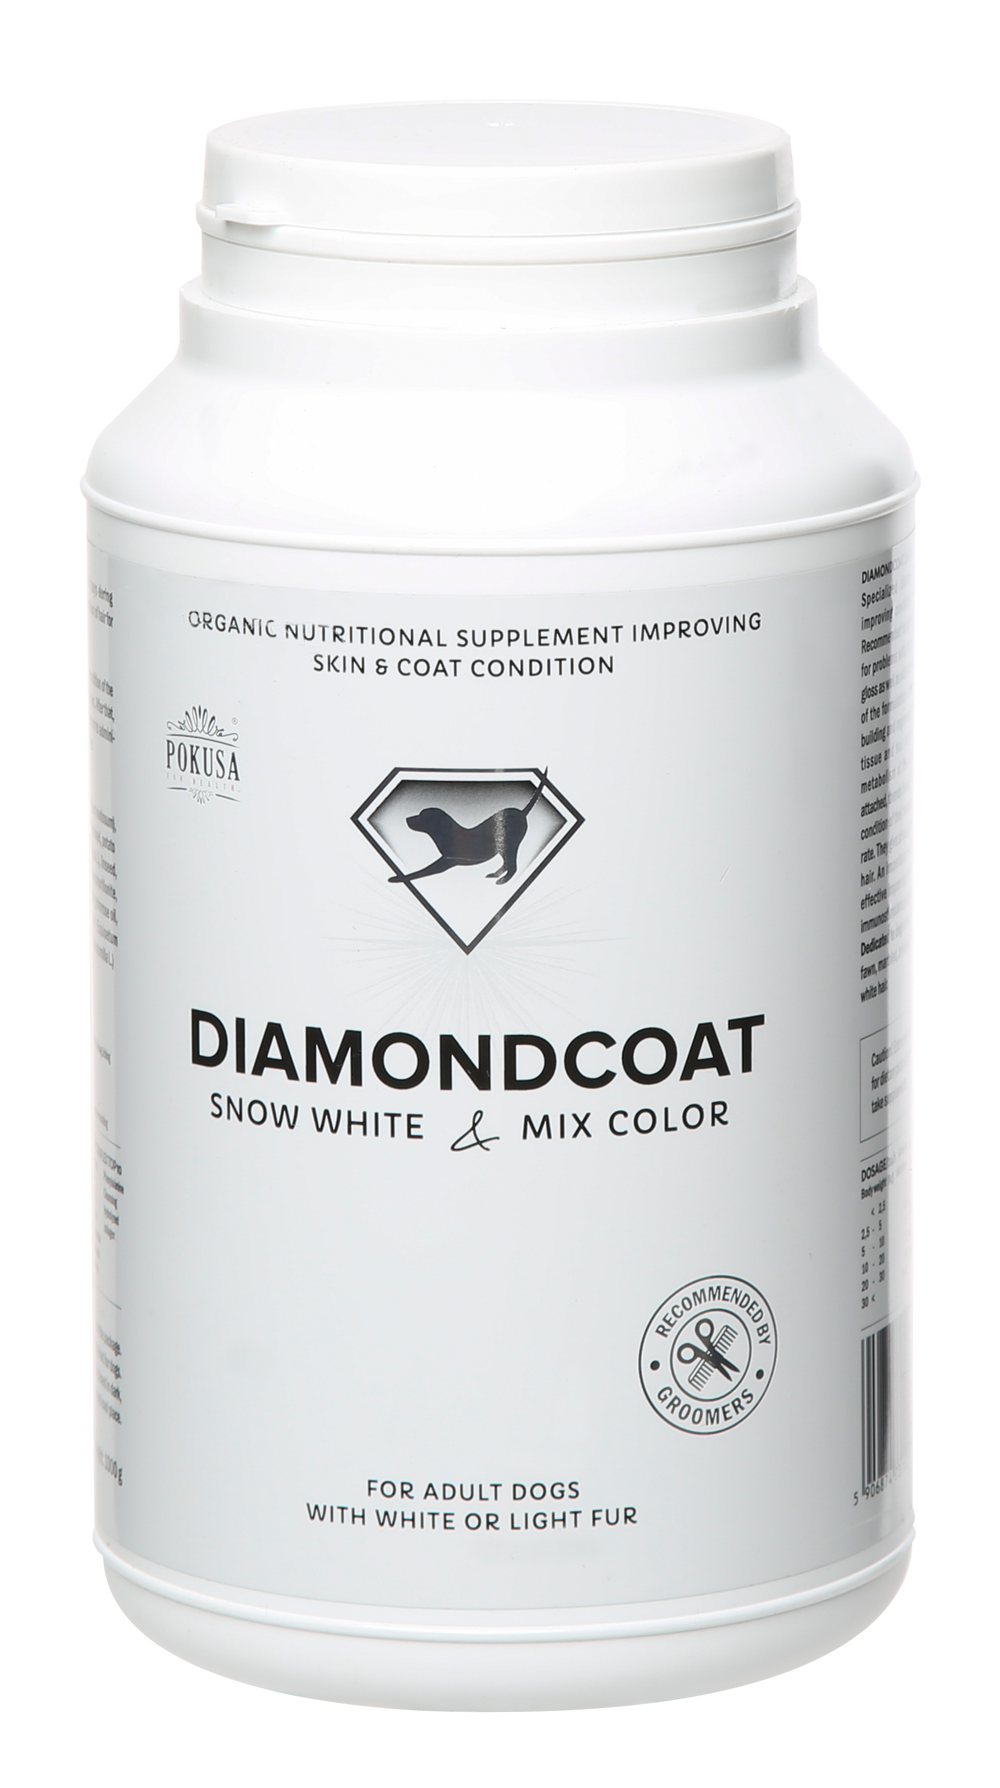 DiamondCoat Snow White & Mix Colour